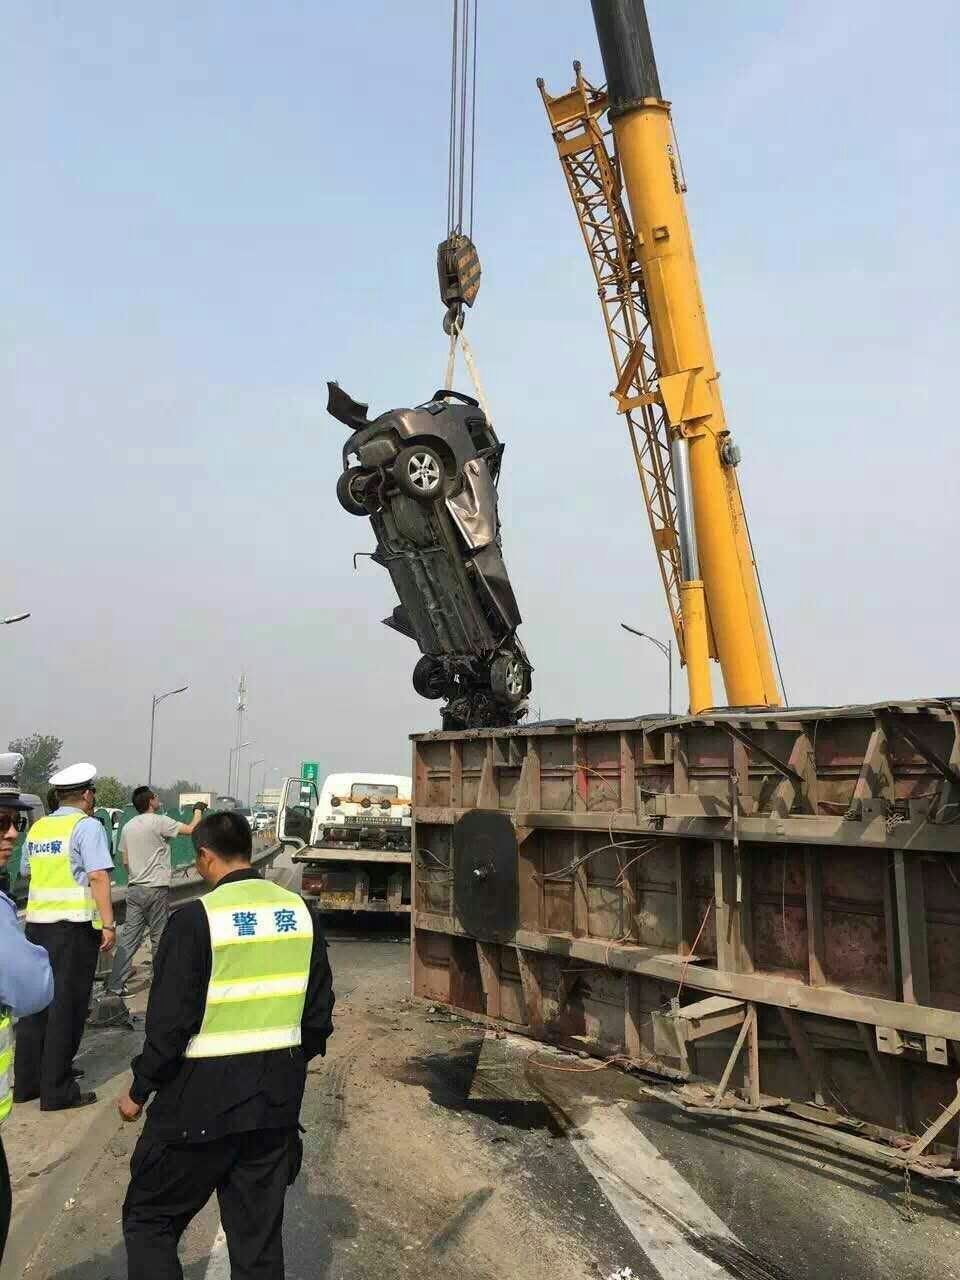 5月20日中午,北京五环路上,一辆运送巨型佛像的大车侧翻,砸扁隔壁